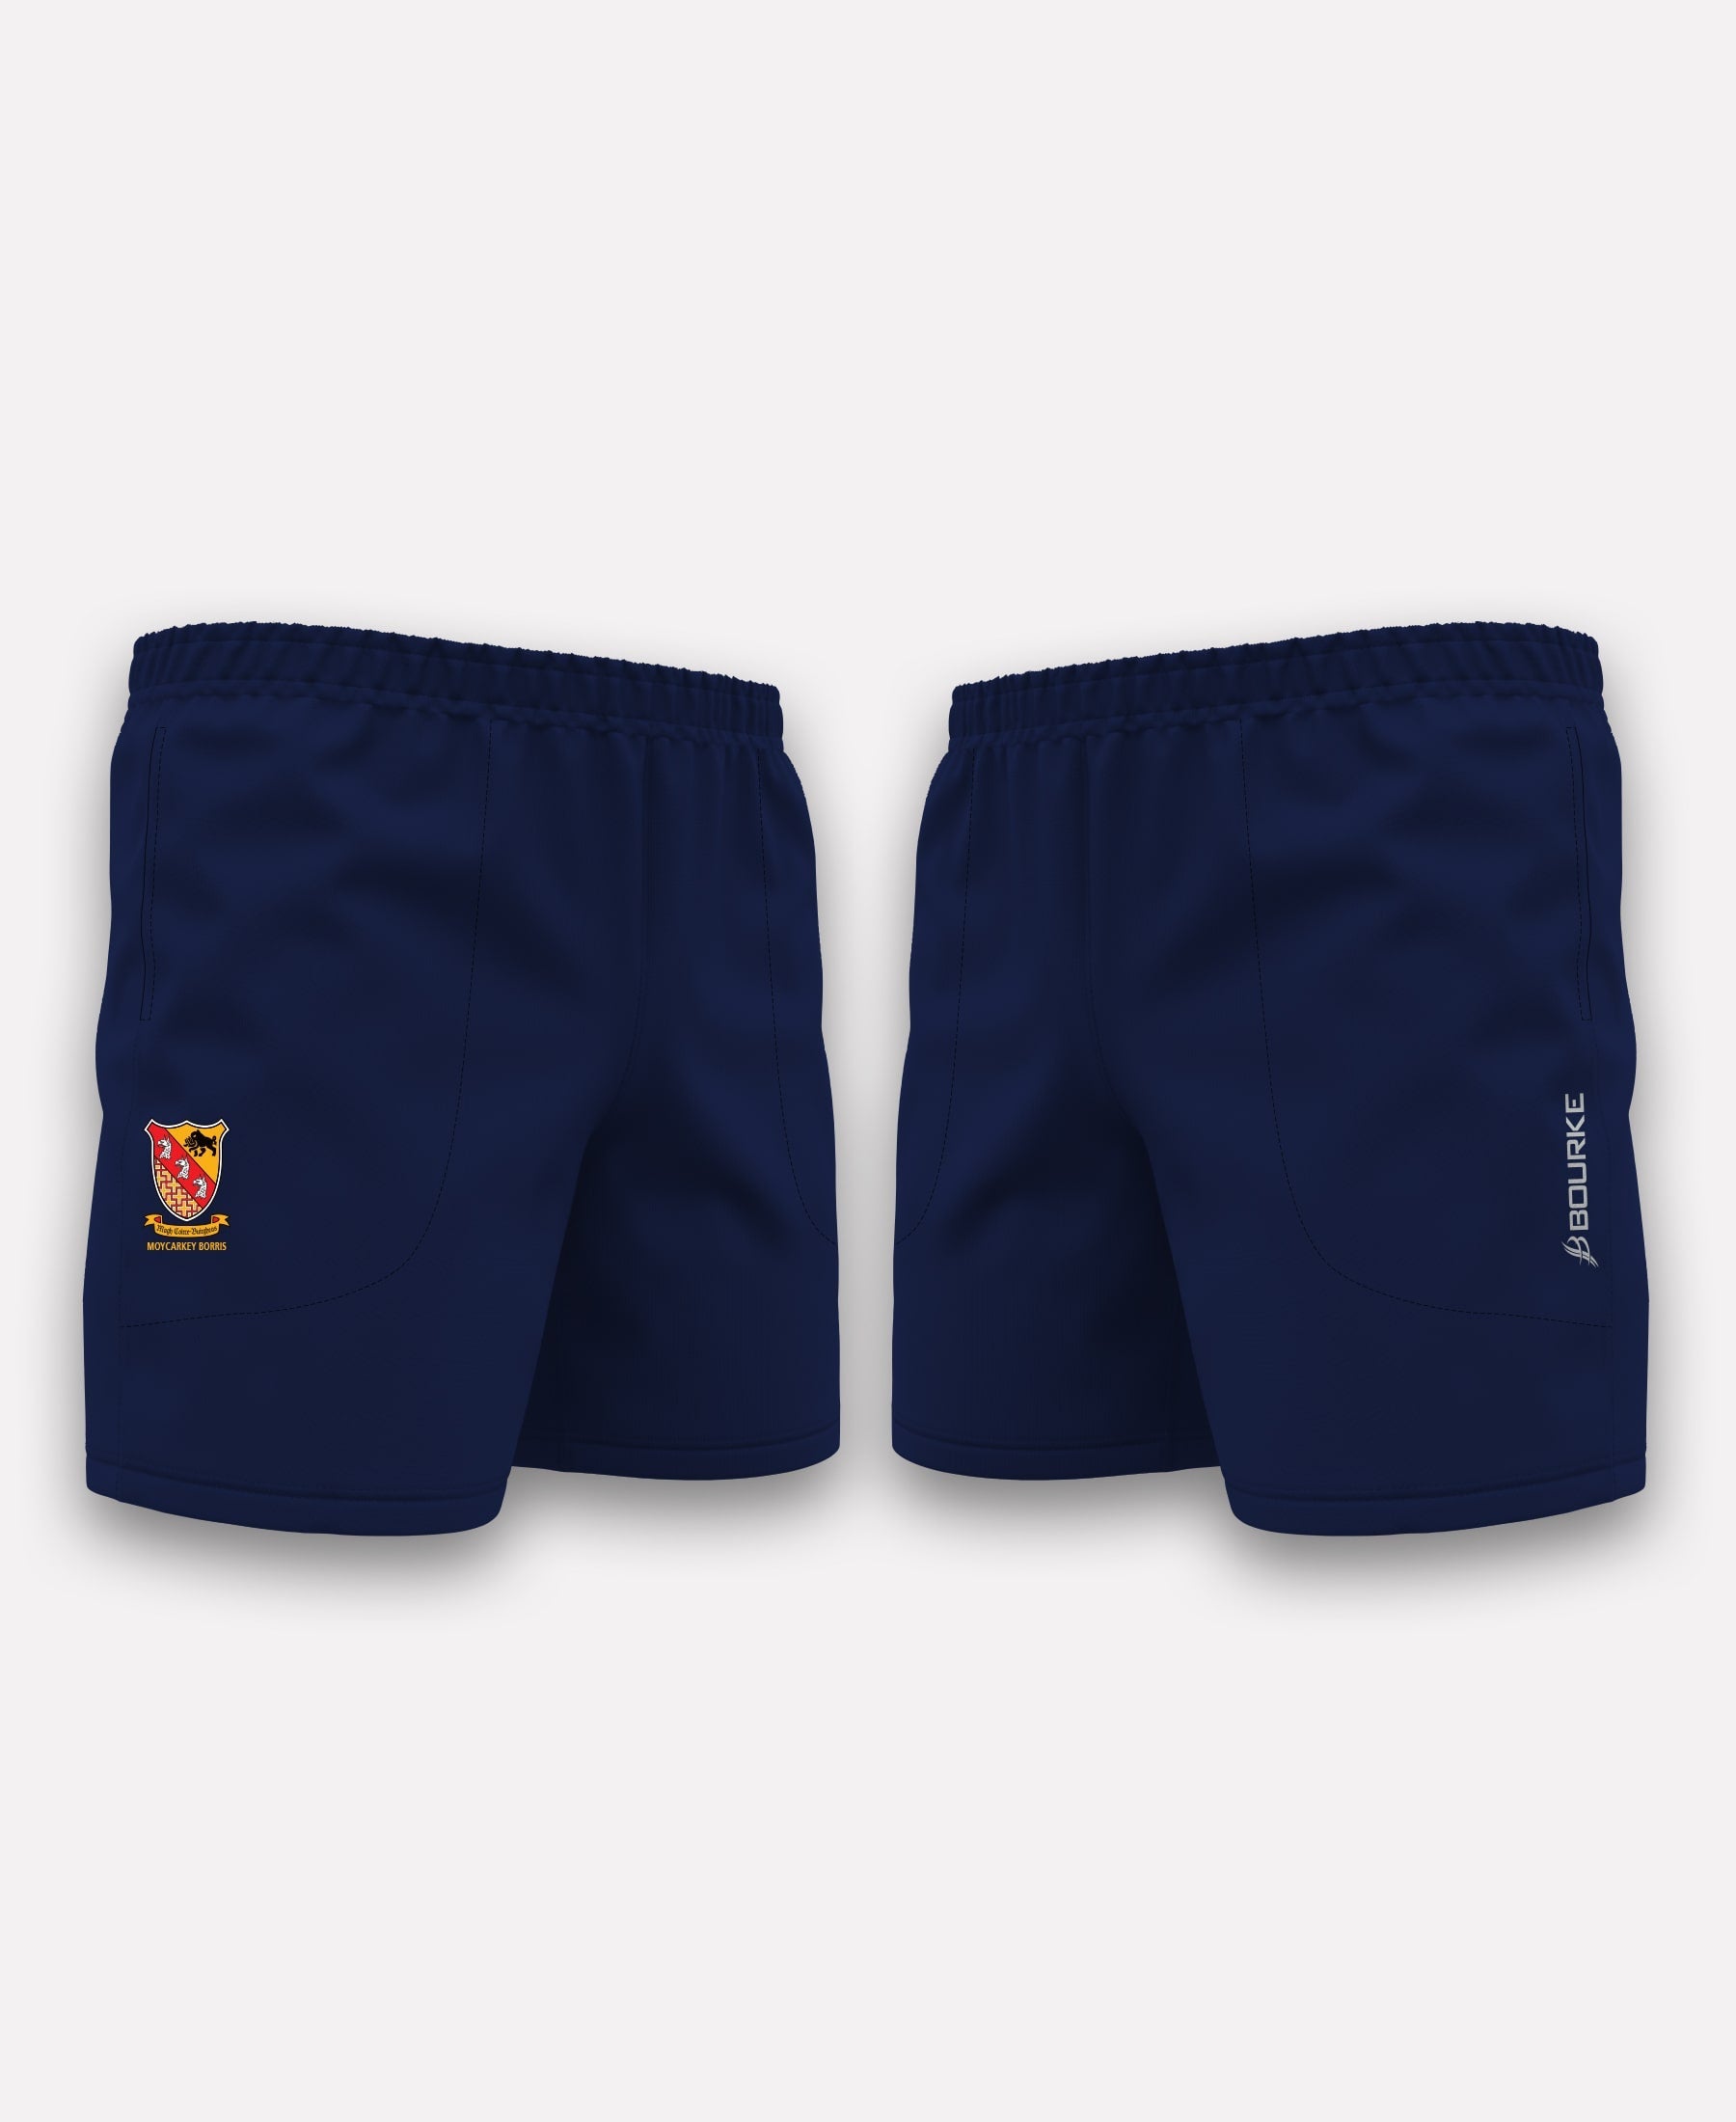 Moycarkey Borris GAA TACA Gym Shorts (Navy)